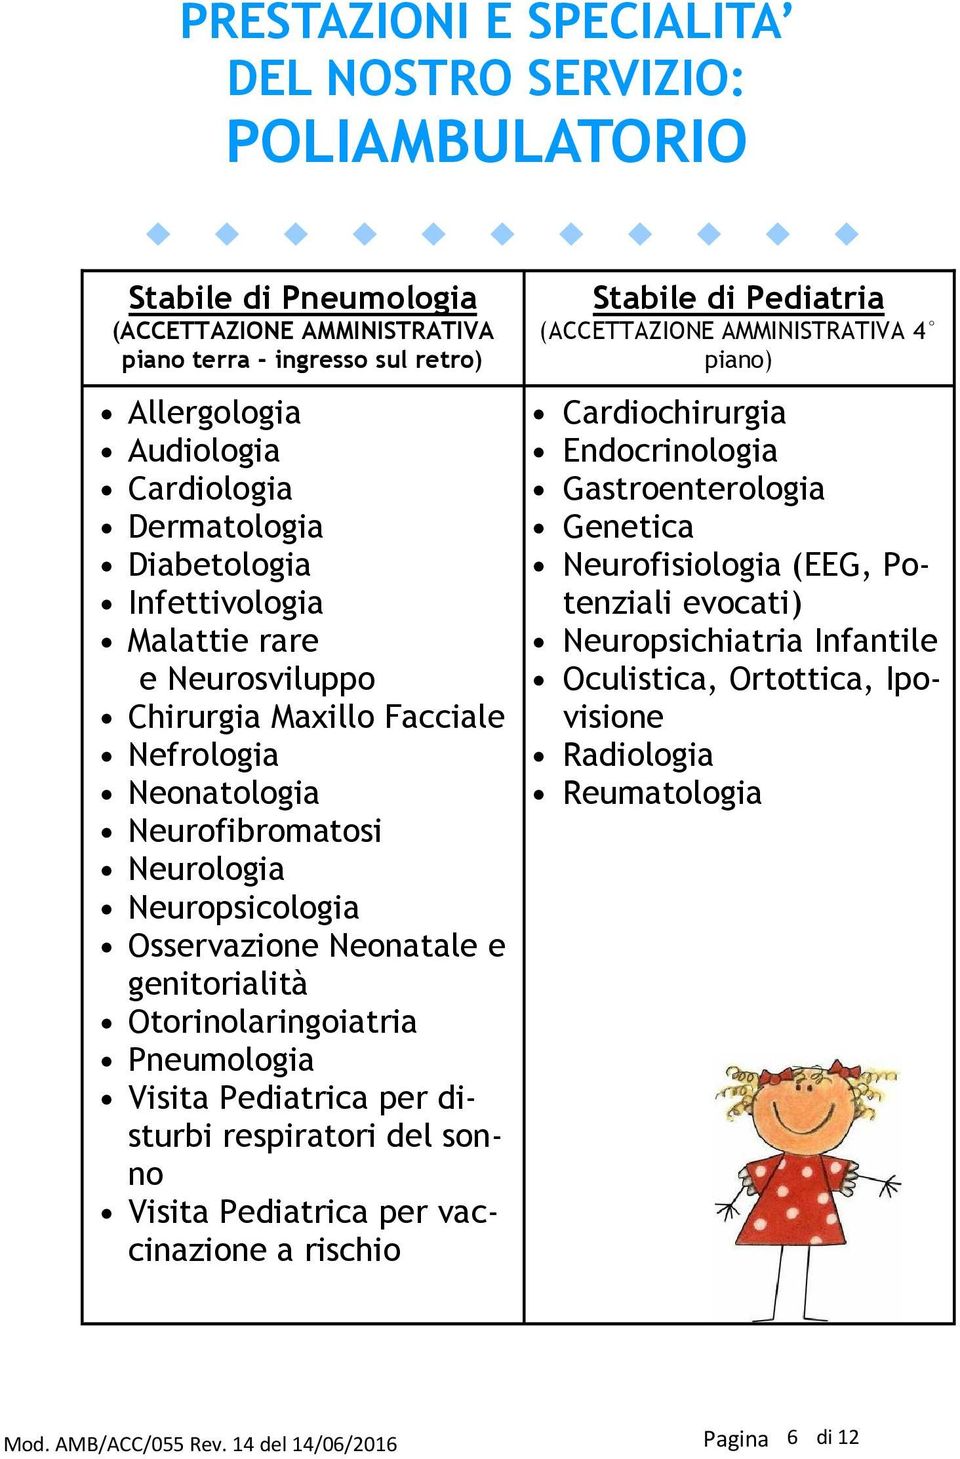 genitorialità Otorinolaringoiatria Pneumologia Visita Pediatrica per disturbi respiratori del sonno Visita Pediatrica per vaccinazione a rischio Stabile di Pediatria (ACCETTAZIONE AMMINISTRATIVA